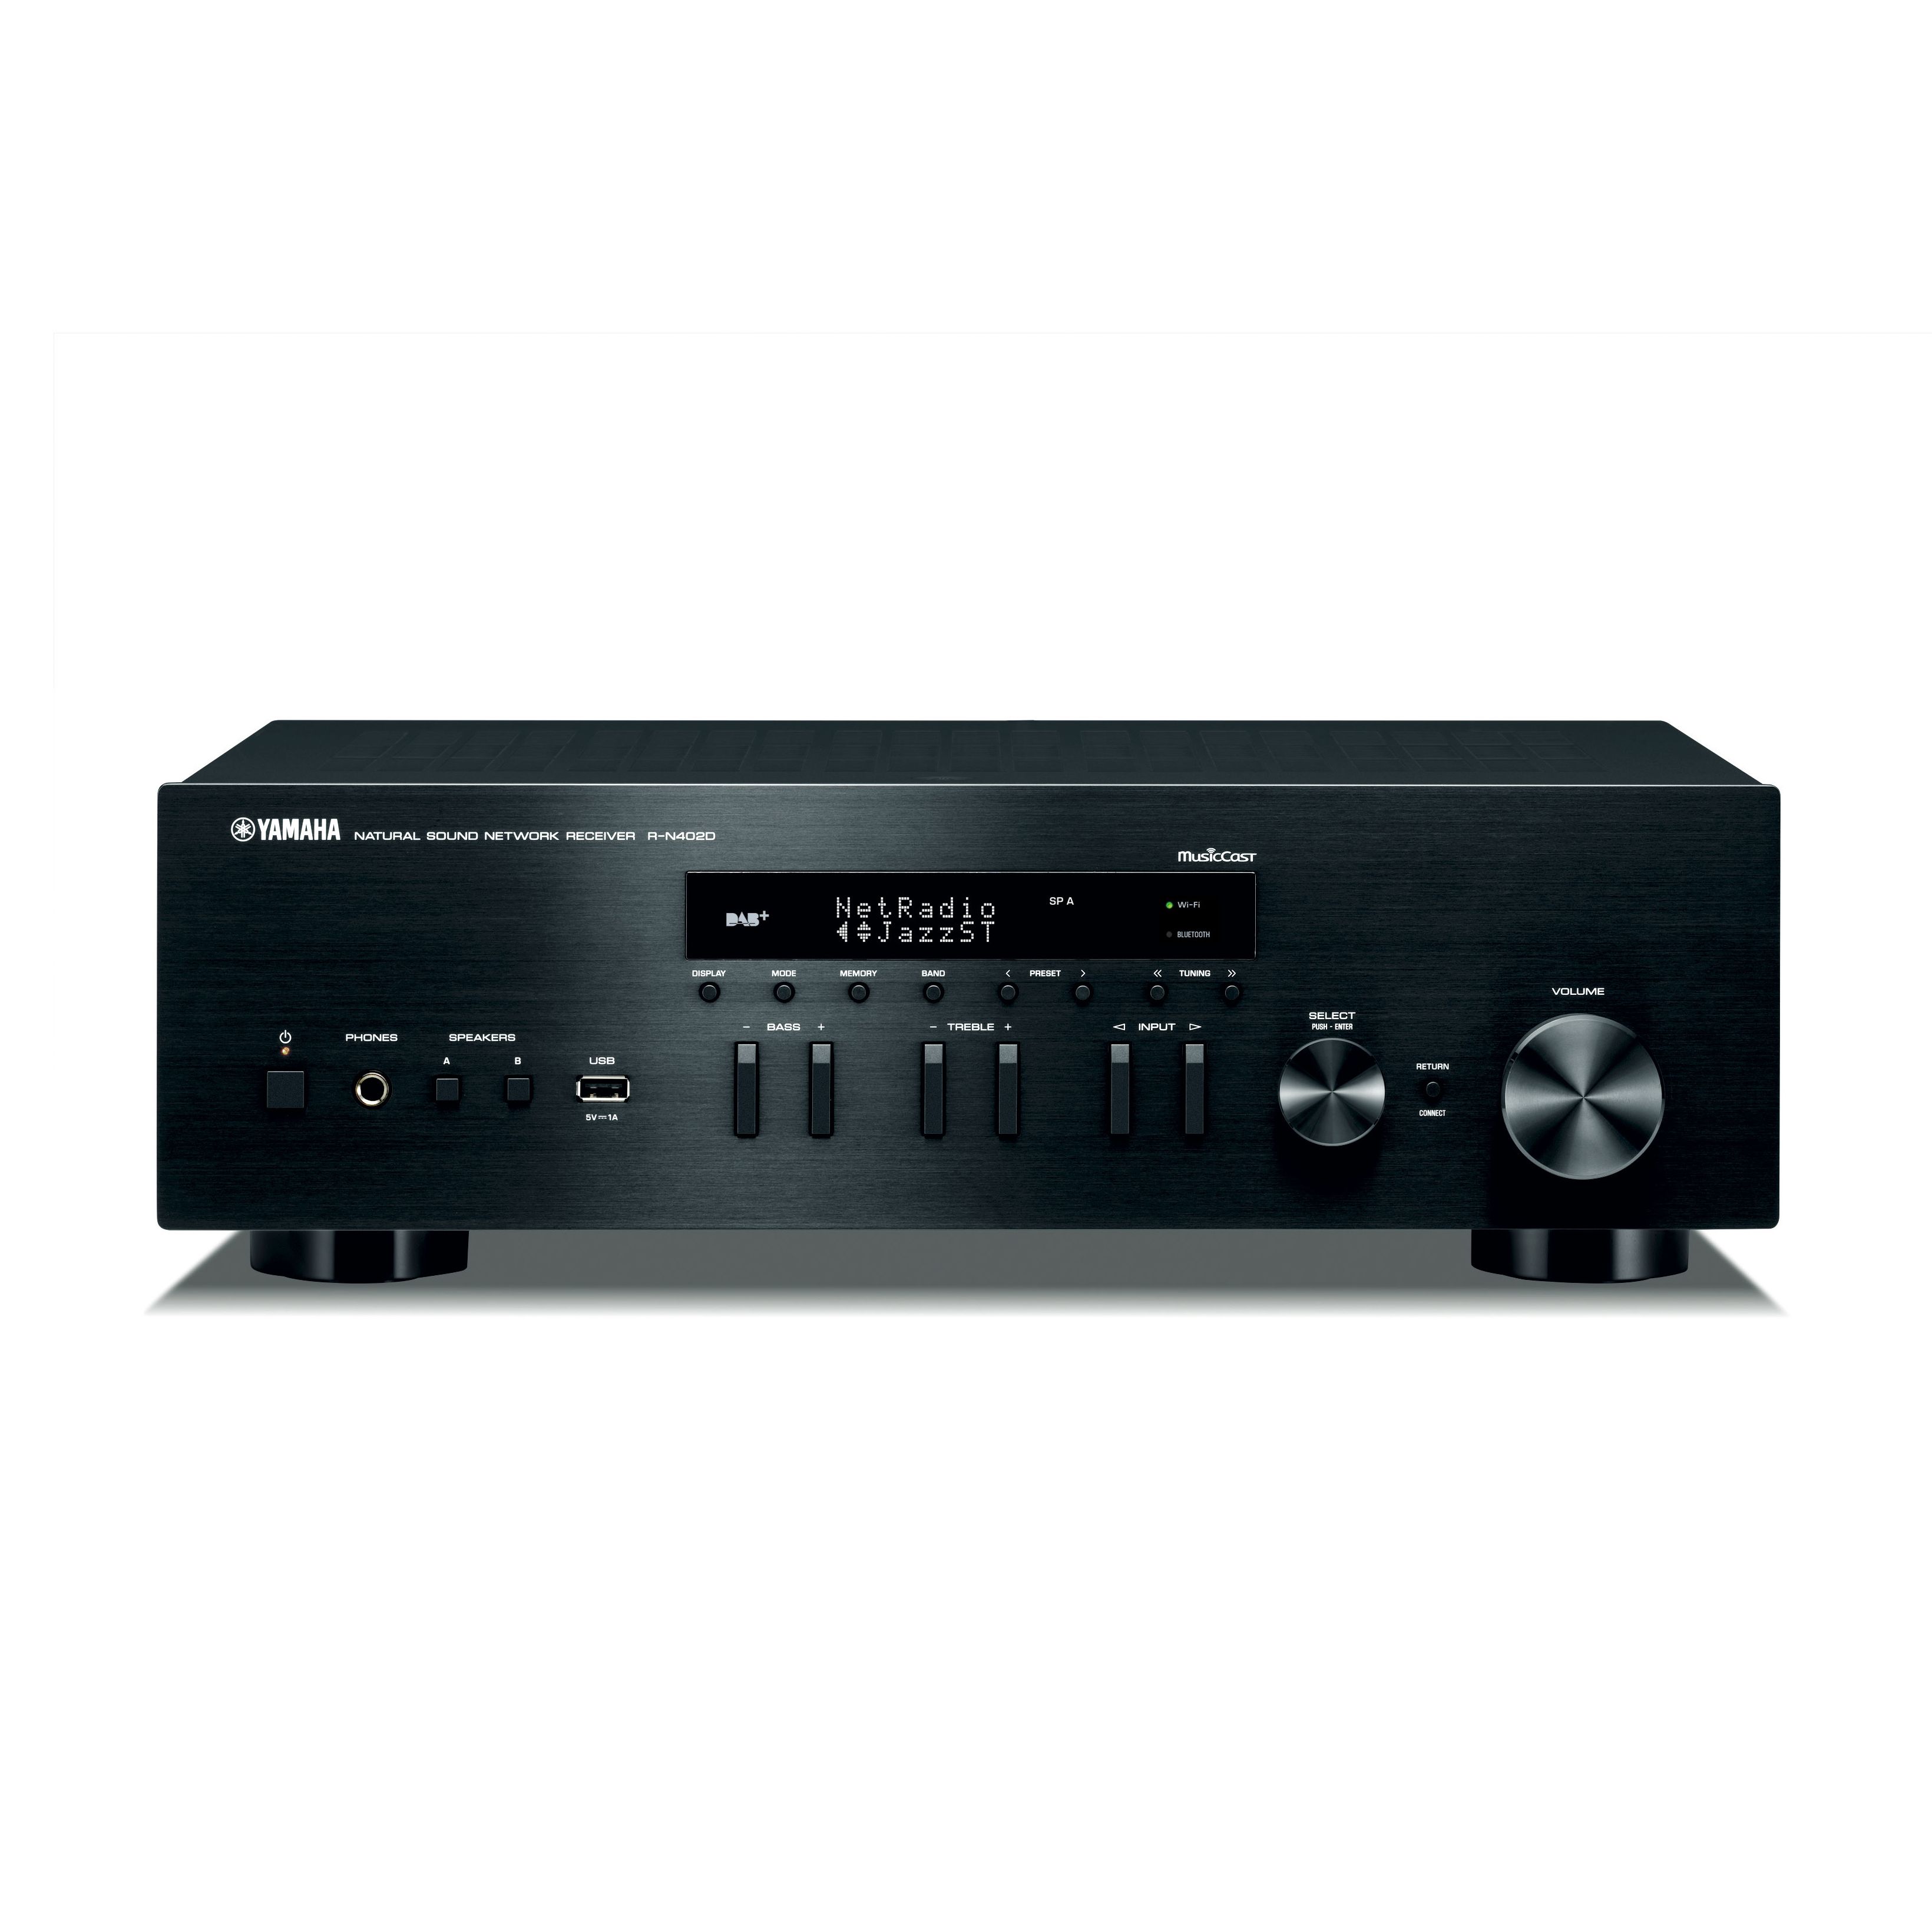 MusicCast R-N402D - Panoramica - Componenti HiFi - Audio ...